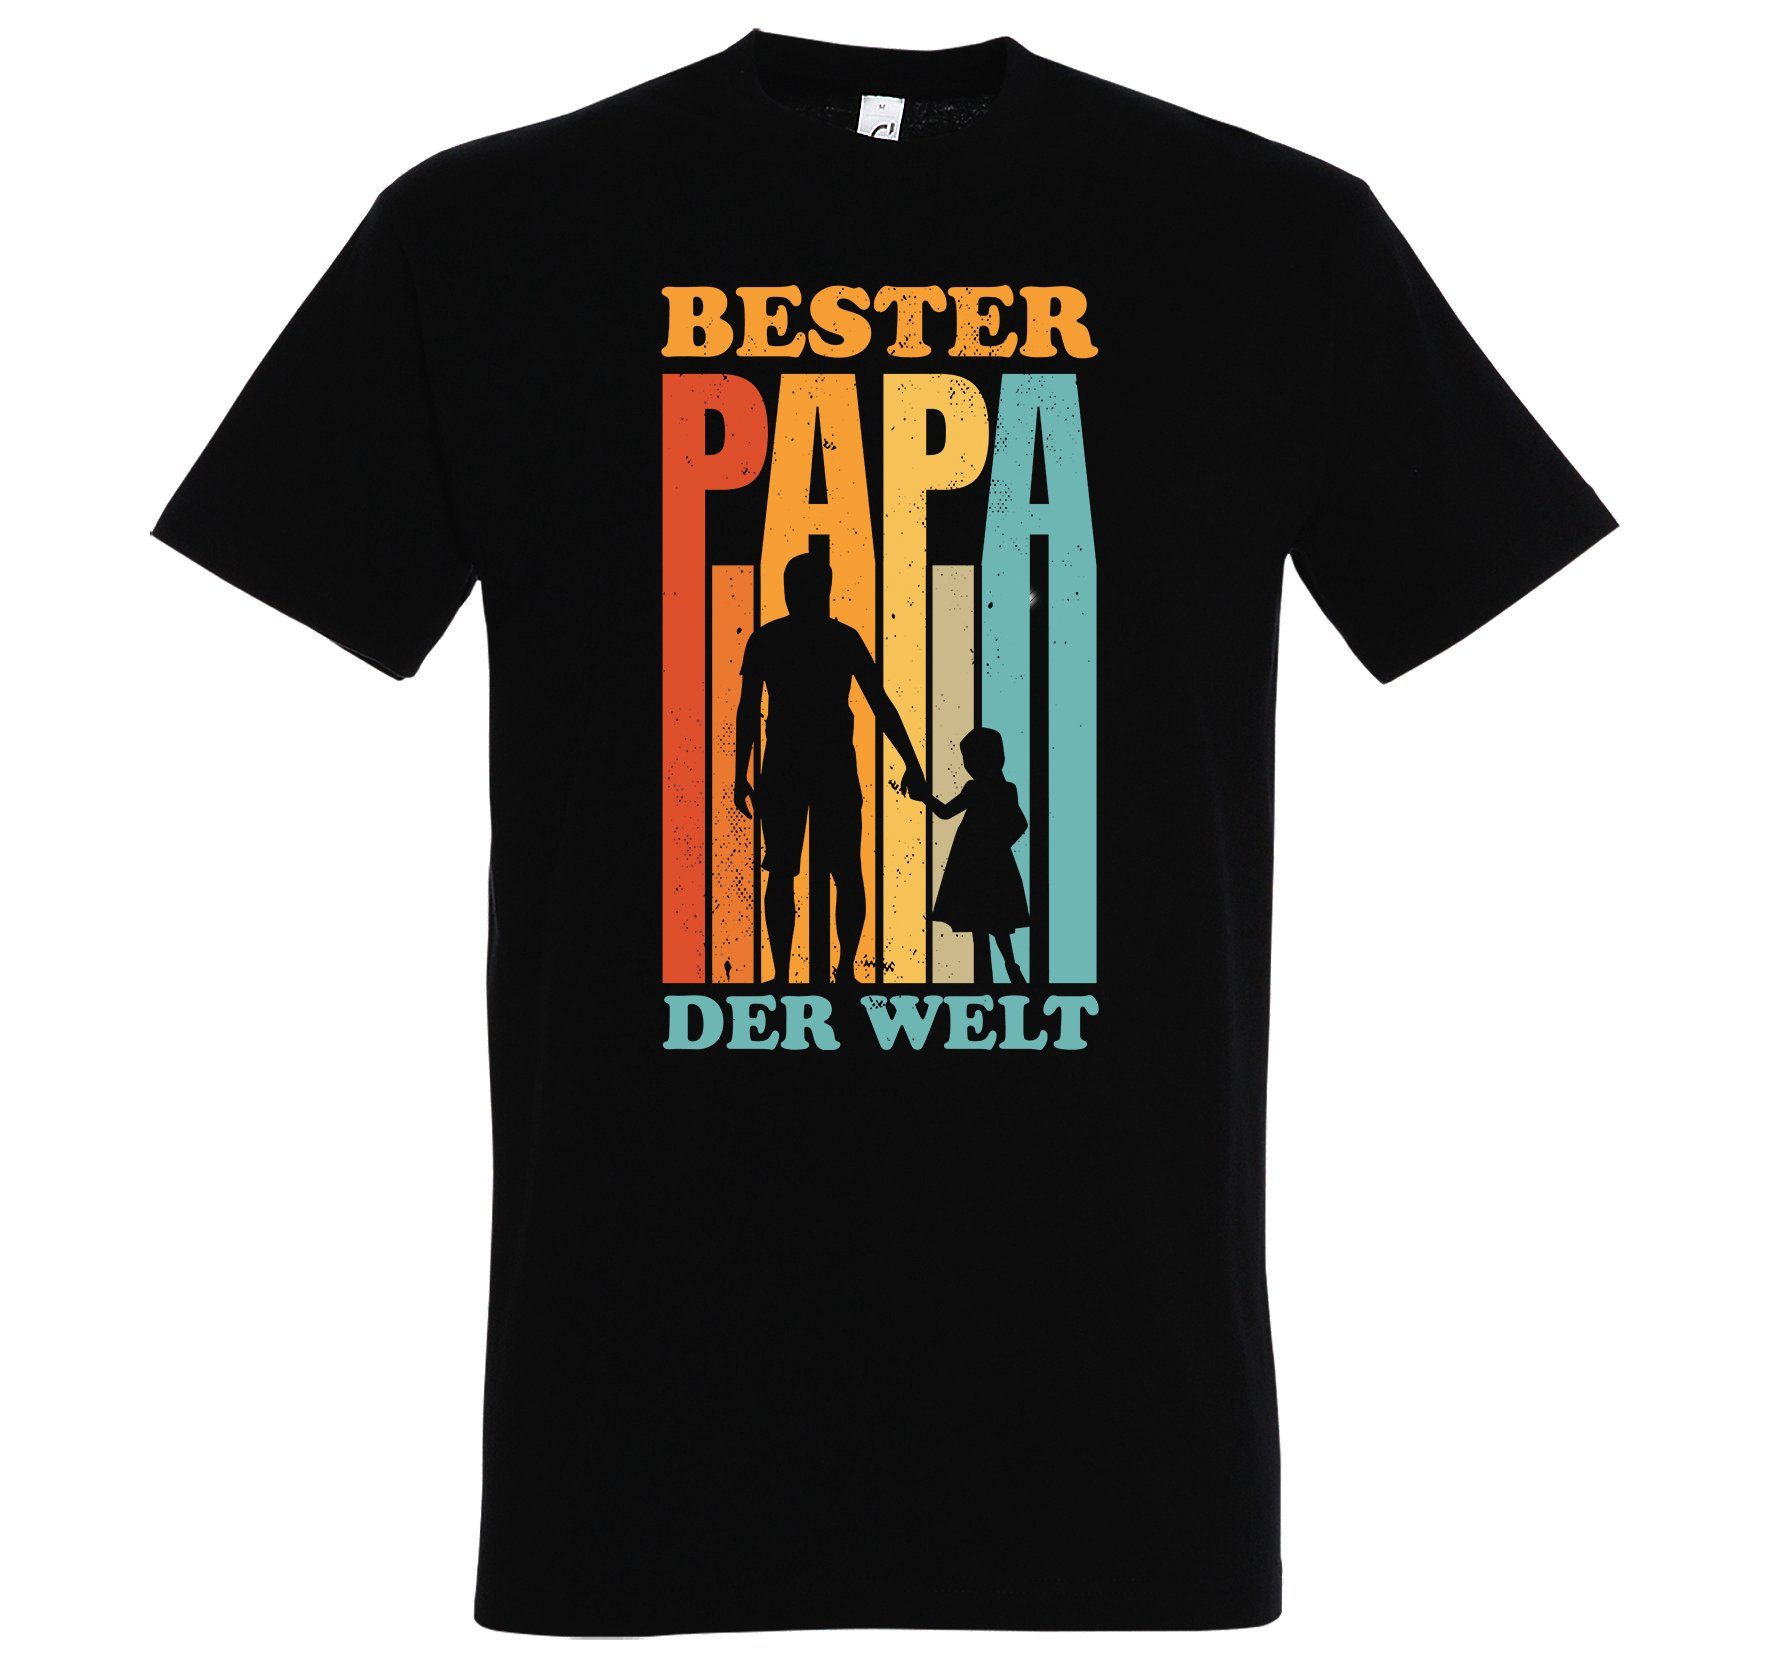 Youth Designz T-Shirt "Bester Papa der Welt" Herren T-Shirt mit Spruch Print Schwarz